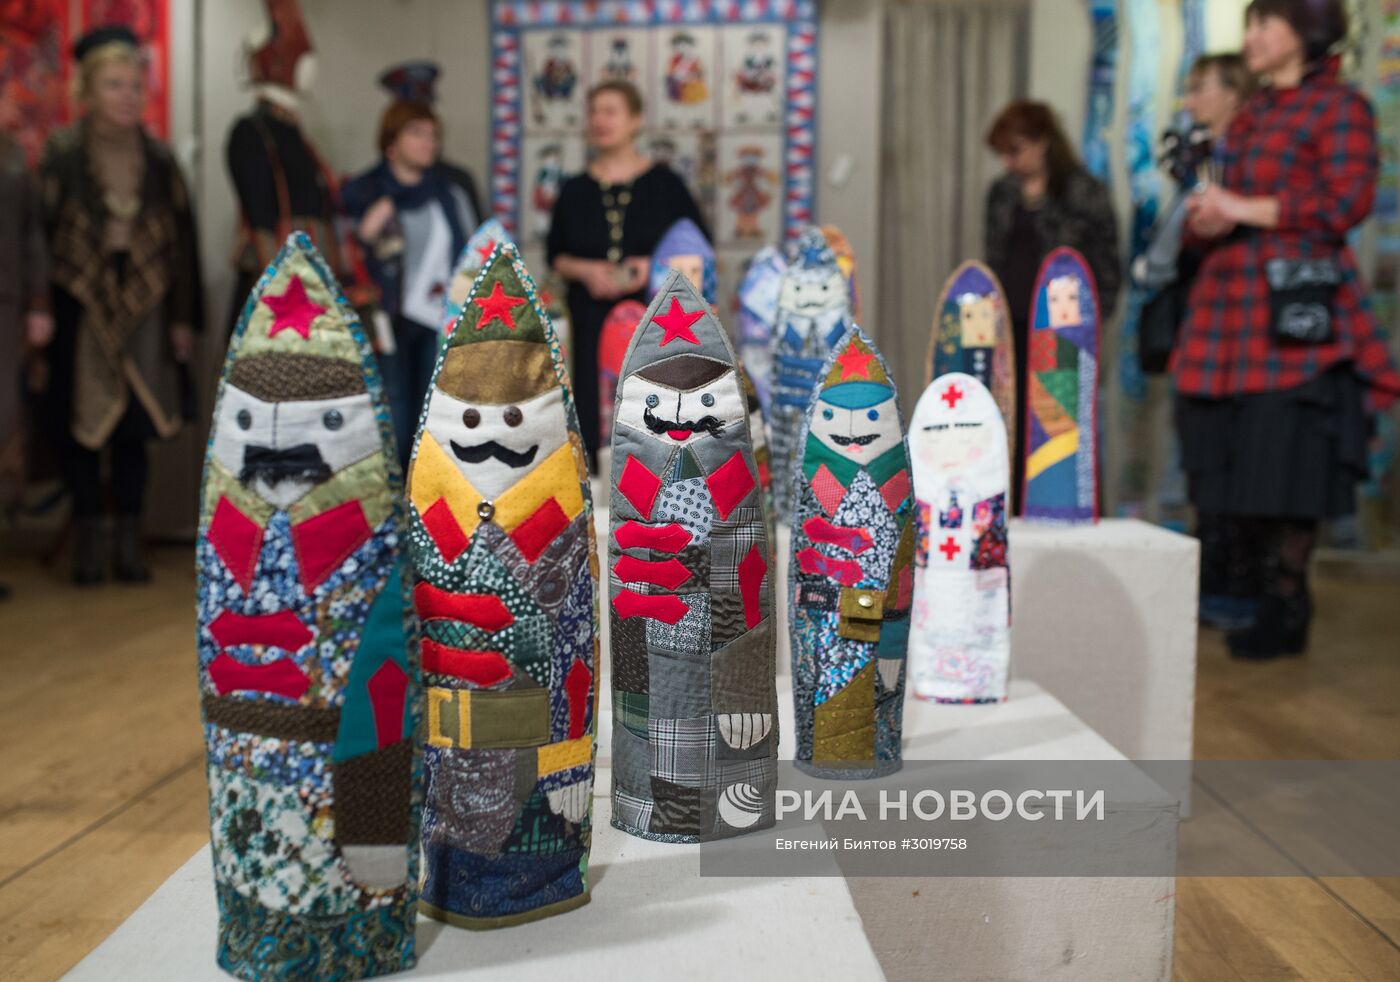 Открытие выставки "Аты-баты"